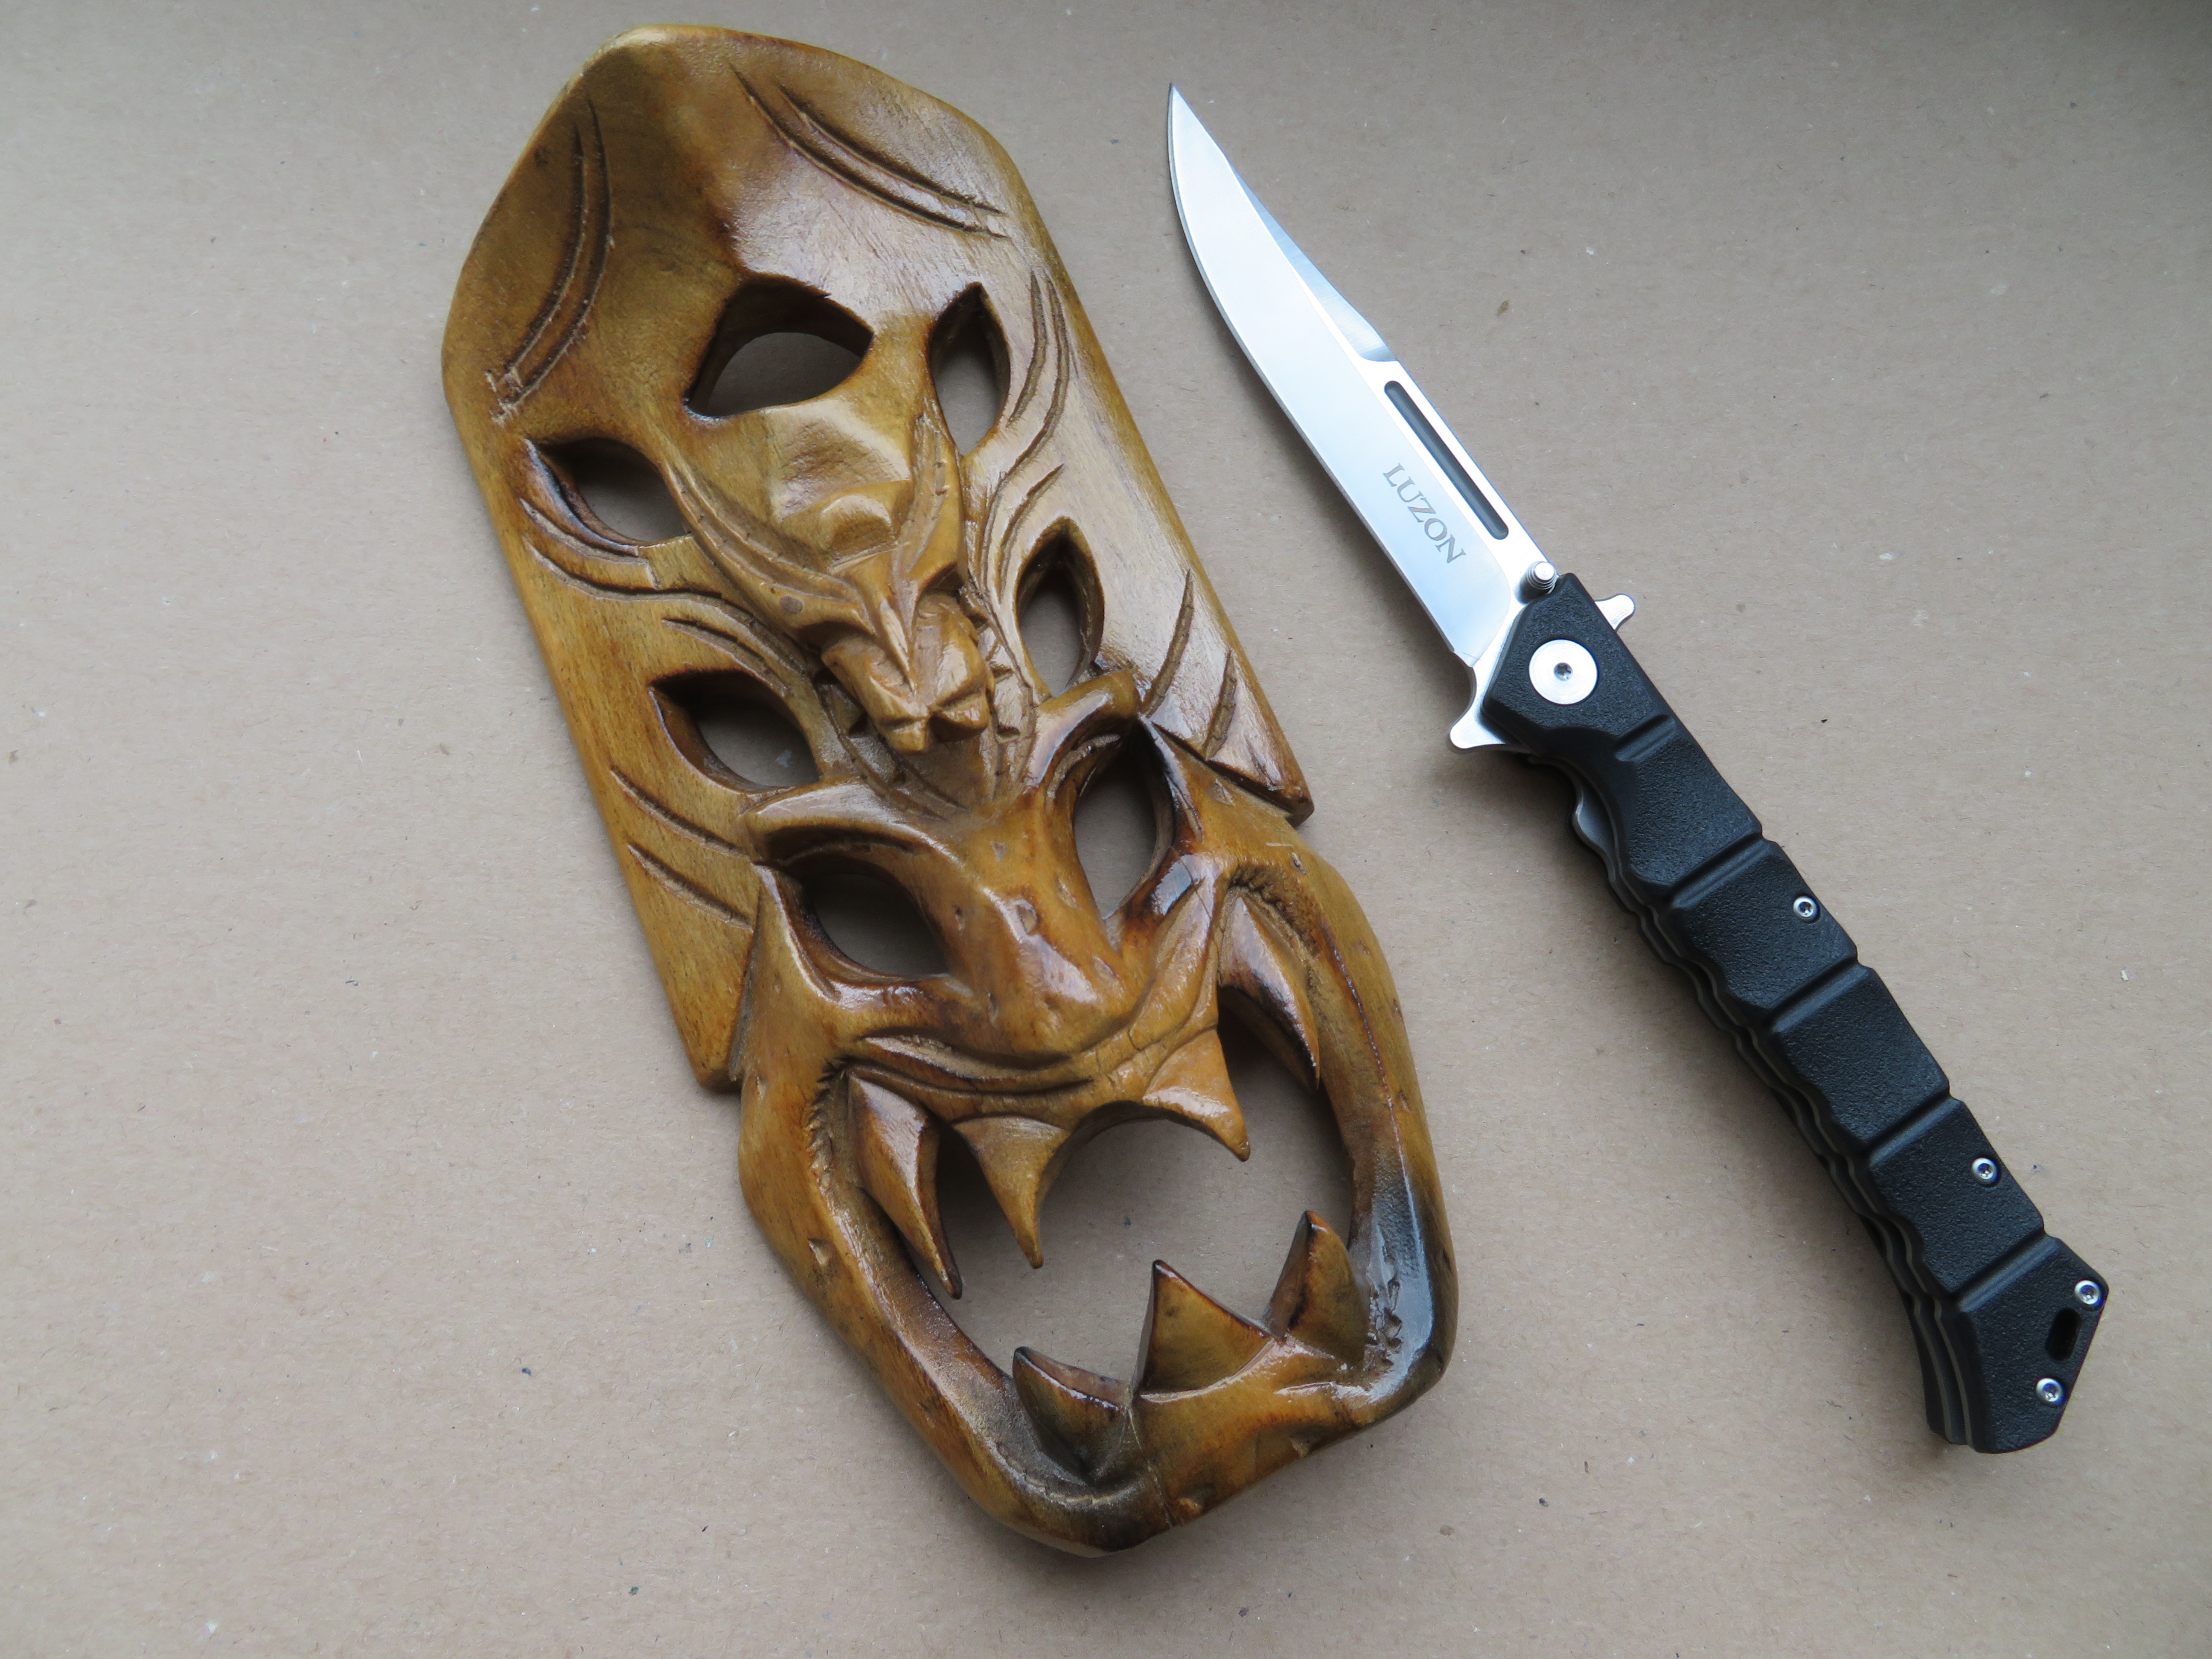 Tradiční filipínská dřevěná maska Ifugavů z ostrova Luzon a zavírací nůž Luzon.